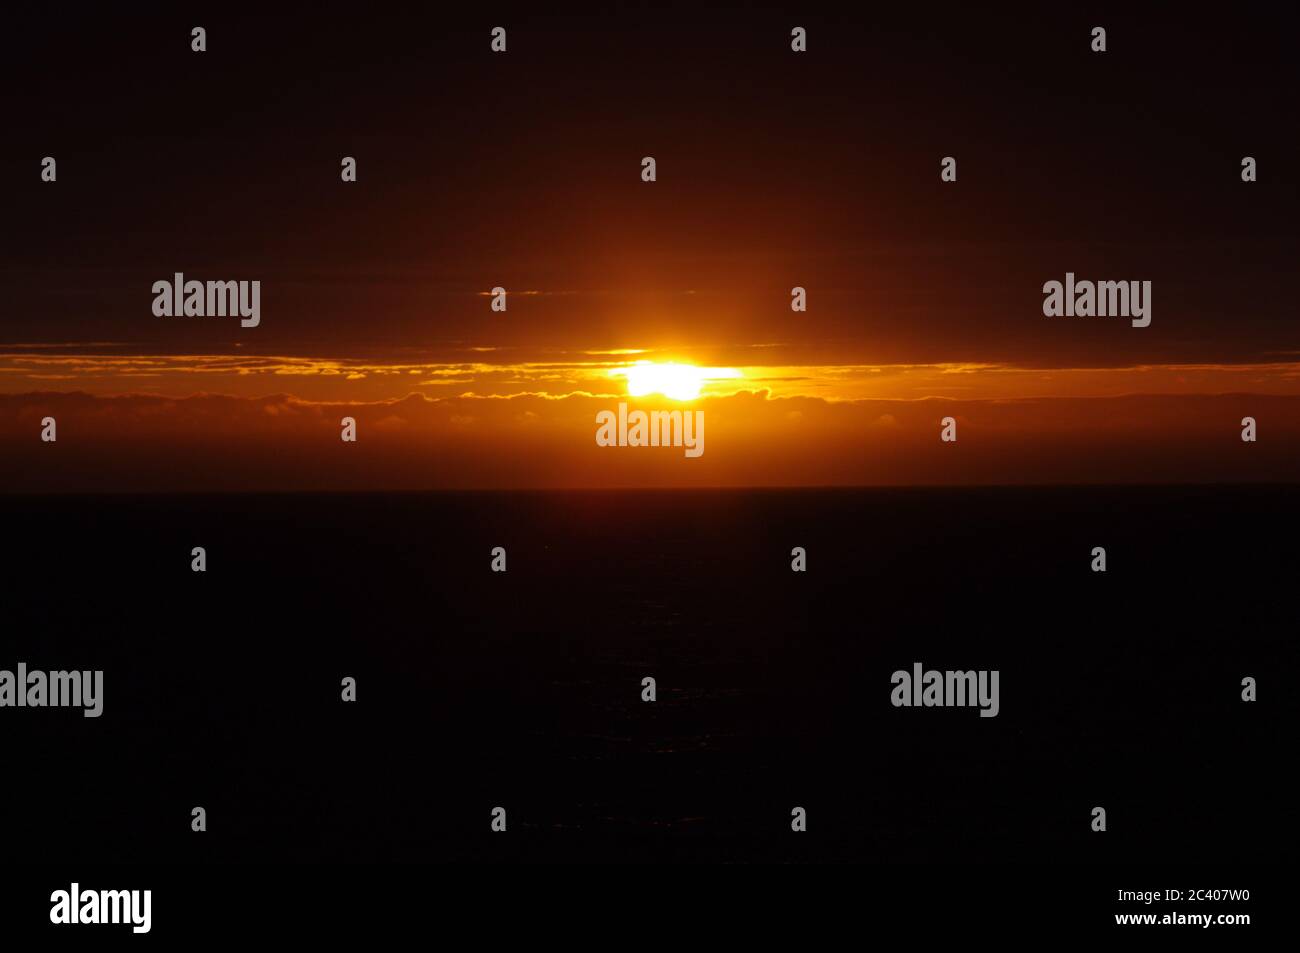 Secuencia de imágenes de una puesta de sol desde el mismo punto de vista puesta de sol naranja profundo, el sol naranja oscuro emerge de la nube oscura al mar oscuro, puesta de sol amarilla sobre el s Foto de stock